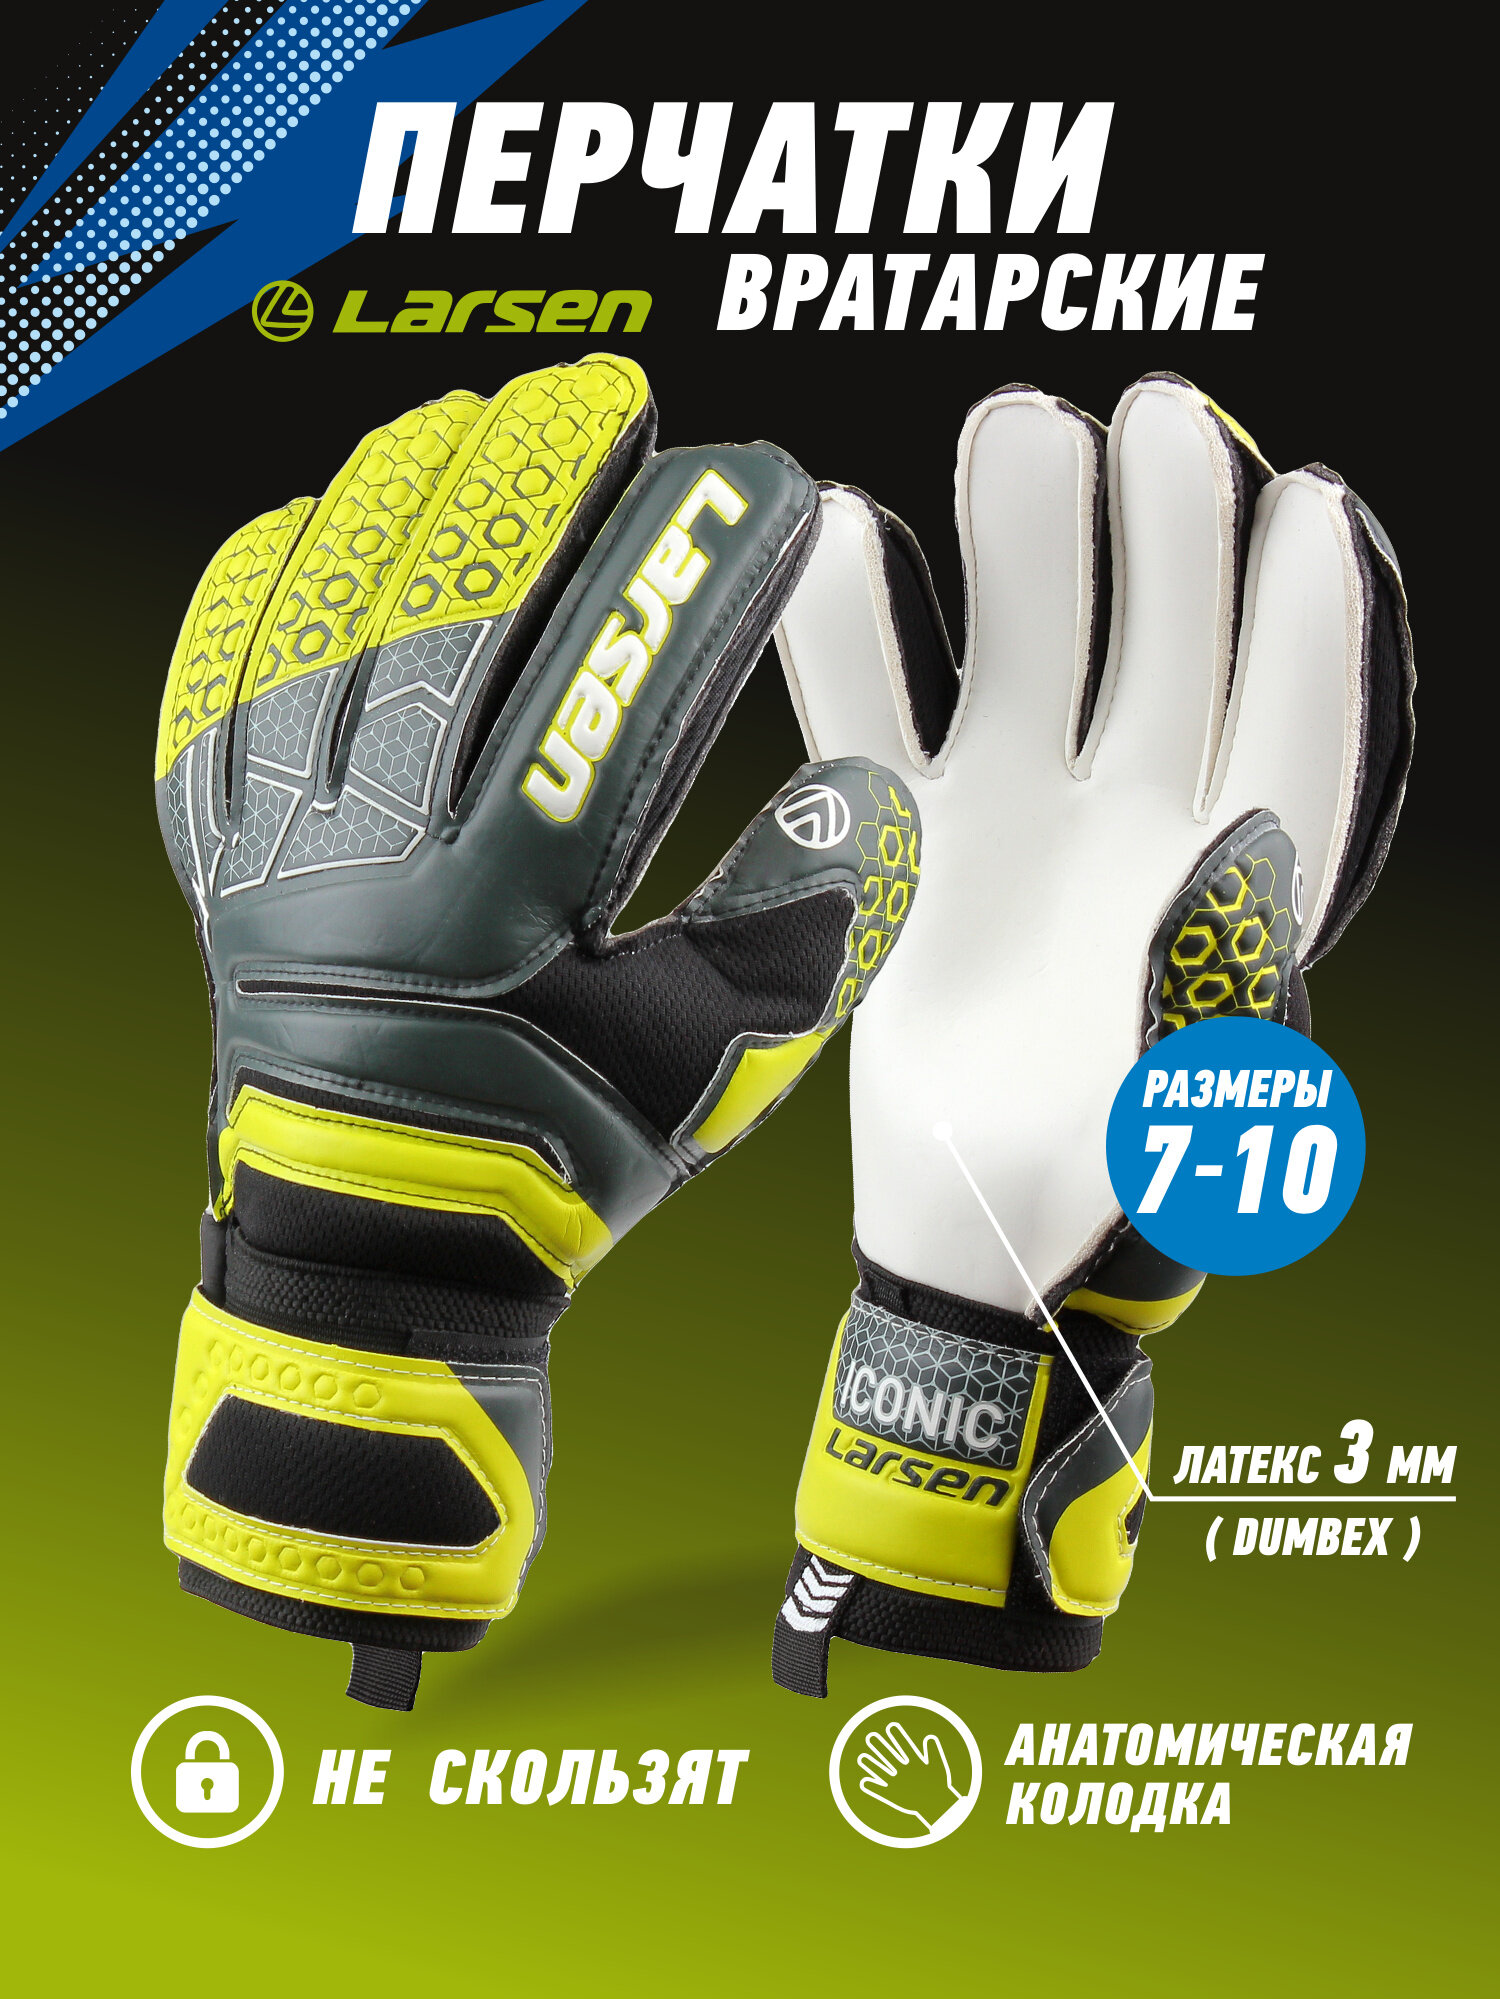 Вратарские перчатки Larsen